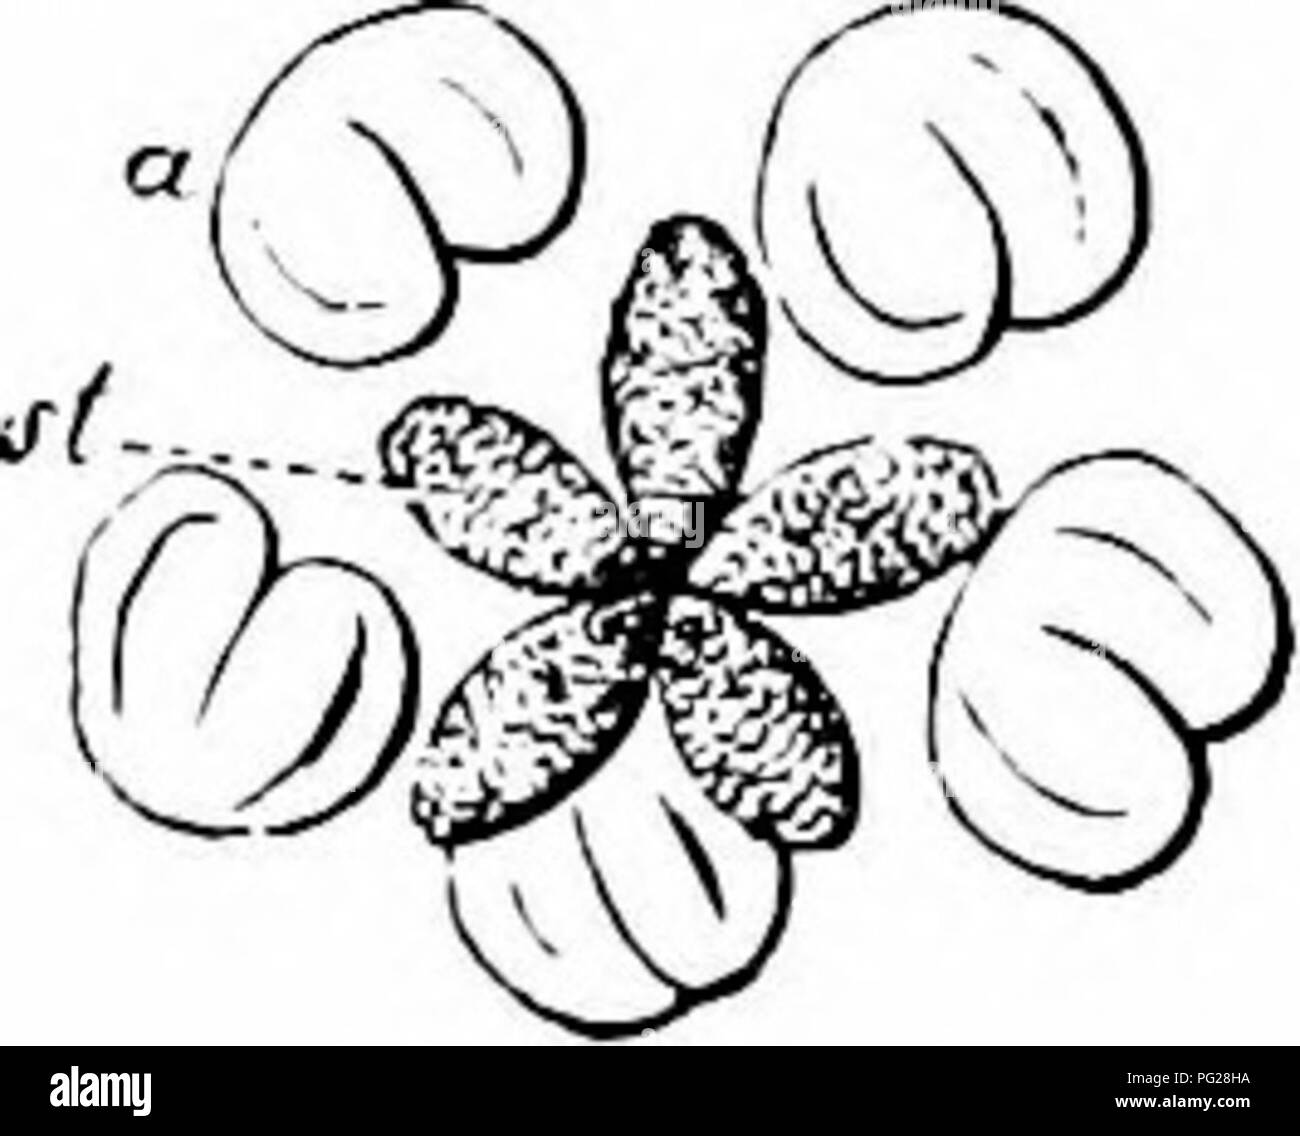 . Handbuch der Blume Bestäubung: auf Hermann MuÌller's Arbeit "die Befruchtung der Blüten durch Insekten". Düngung von Pflanzen. 226 ANGIOSPERMAEâDICOTYLEDONES Zweige noch Unreceptive sind, die Blüte ist rein männlichen in diesem Stadium. Aber, noch bevor alle fünf äußeren Antheren klaffende haben, diese Zweige beginnen zu divergieren. Die äußeren Staubblätter nächste Biegung in der Mitte der Blume, und ihre antheren dehisce. In der letzten Phase, die antheren stehen zwischen und etwas über die Narben, so dass Insekt Besucher dürfen eflTect entweder-oder selbstbestäubung. In Ermangelung solcher Besuch Stockfoto